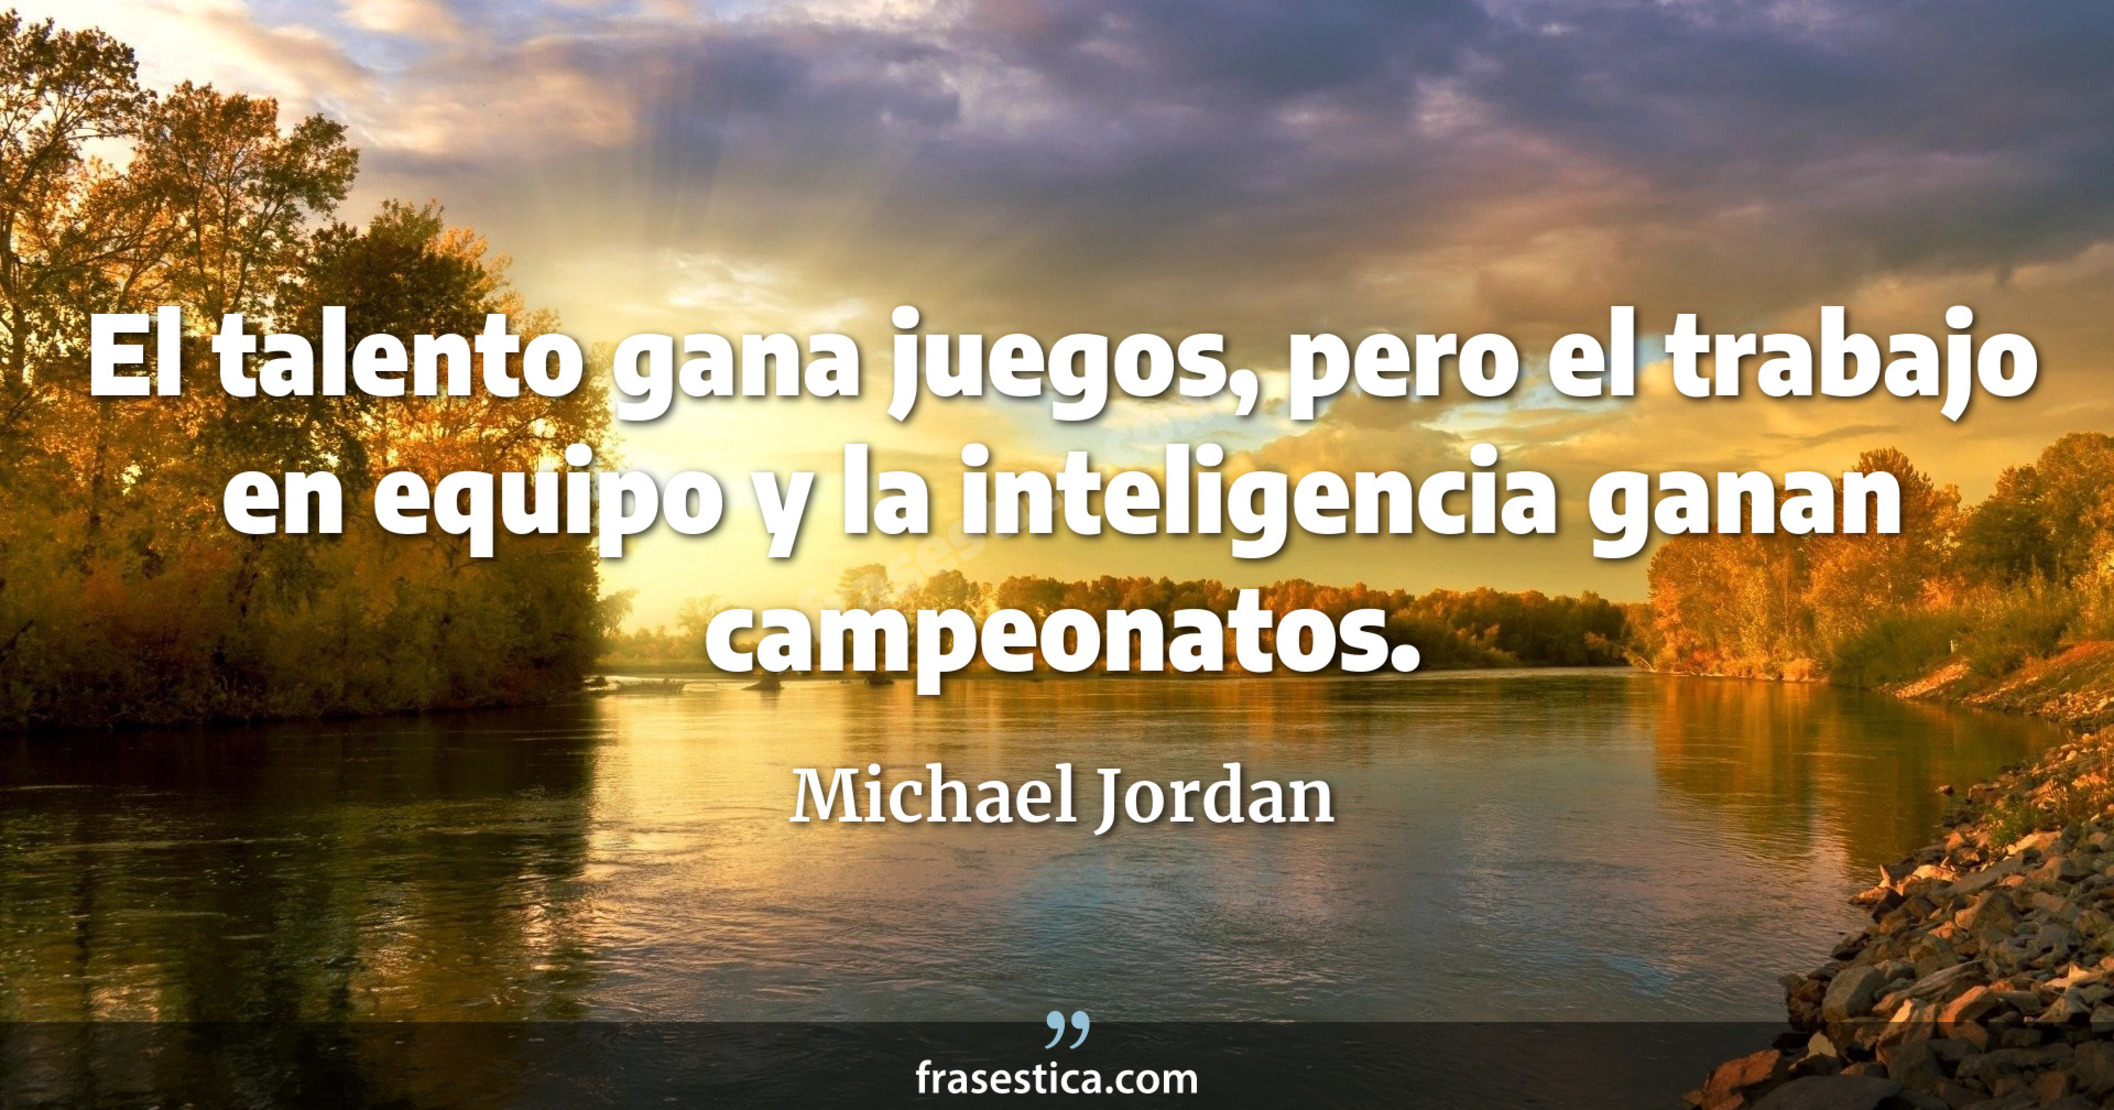 El talento gana juegos, pero el trabajo en equipo y la inteligencia ganan campeonatos. - Michael Jordan